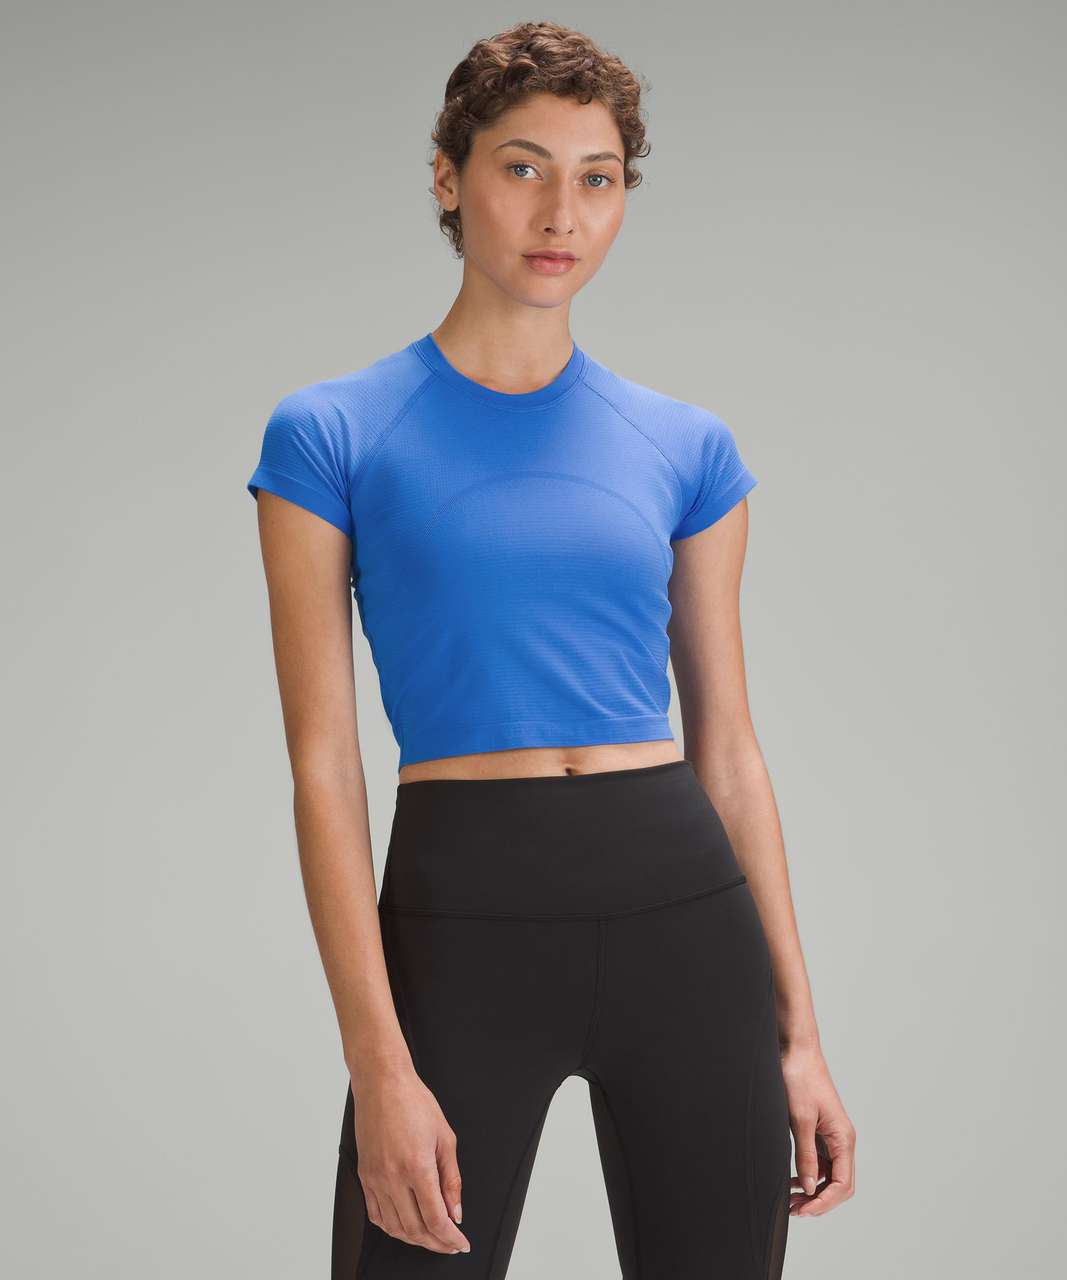 Lululemon Swiftly Tech Short Sleeve Shirt 2.0 - Blue Nile / Blue Nile -  lulu fanatics